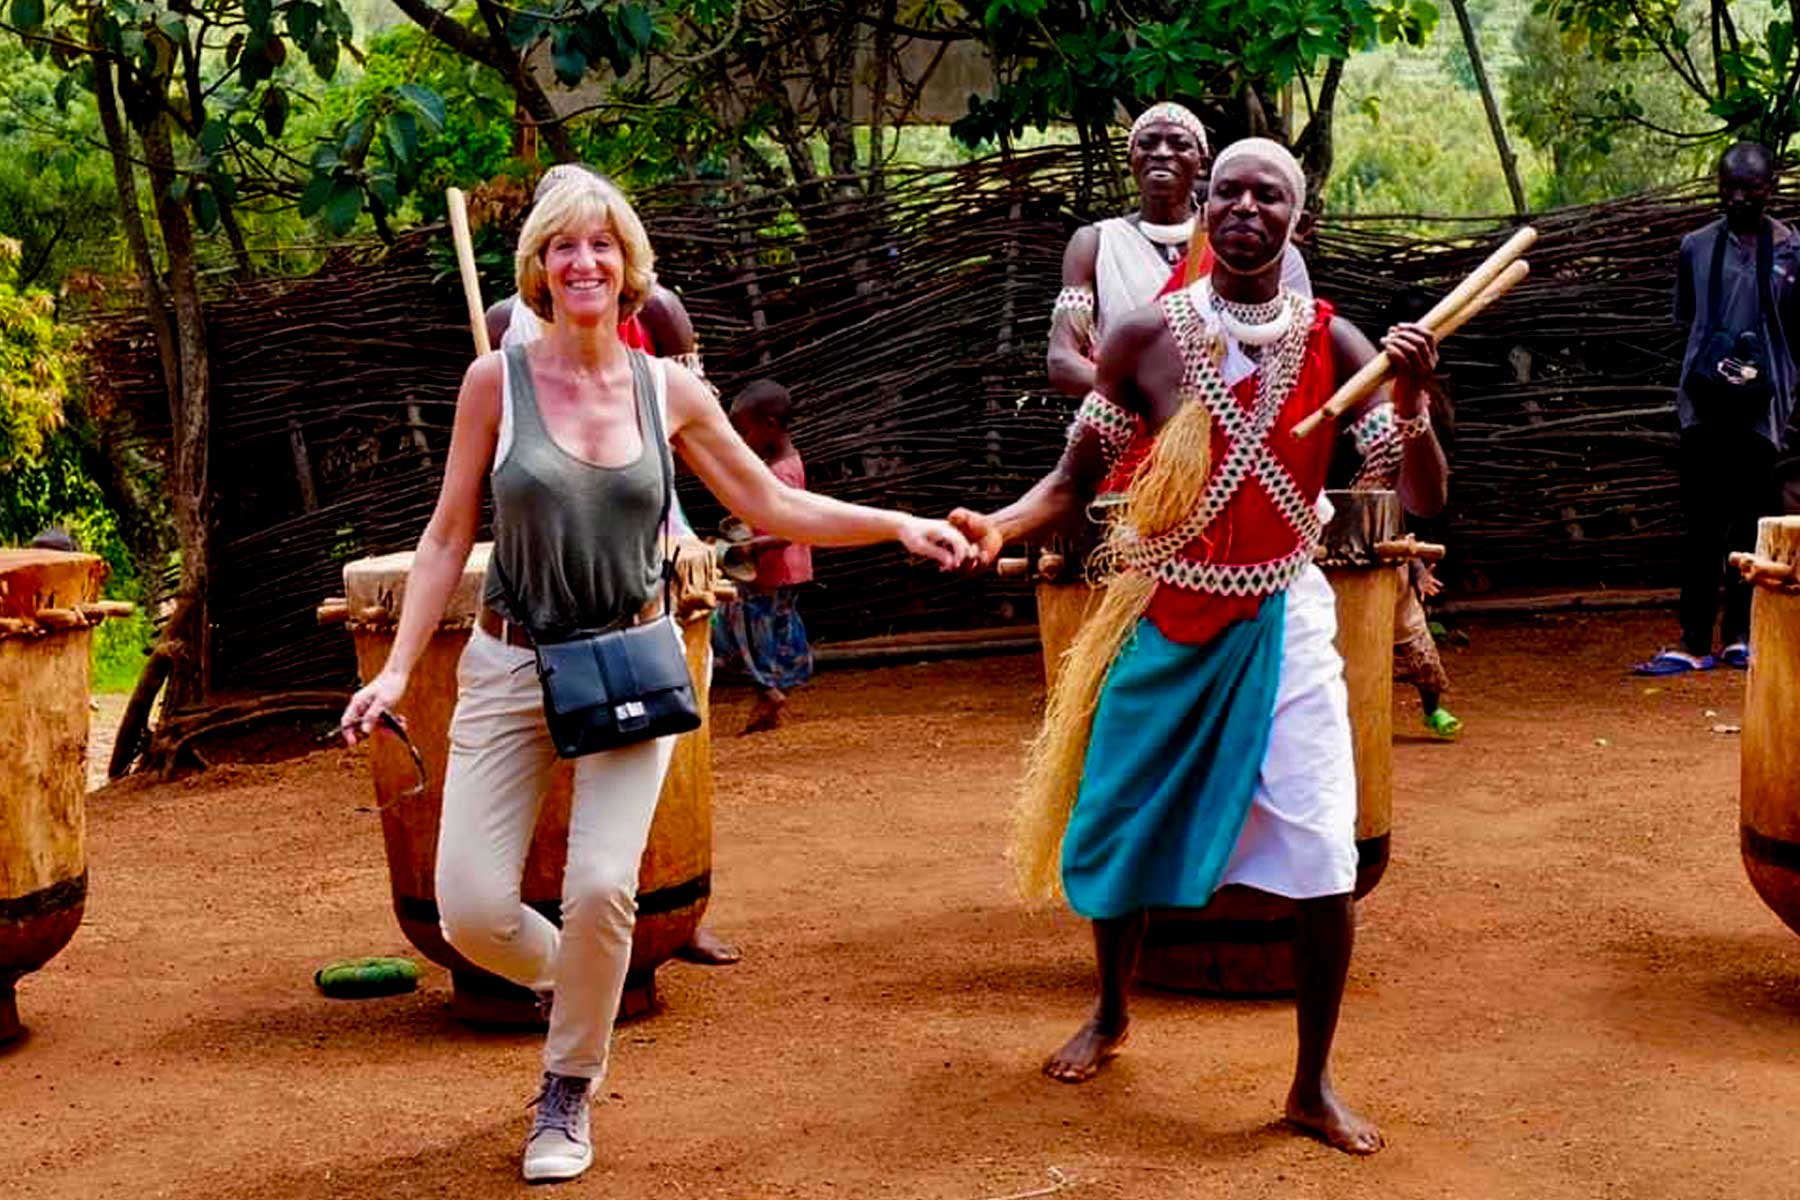 6-days-rwanda-burundi-cross-culture-adventure-safari